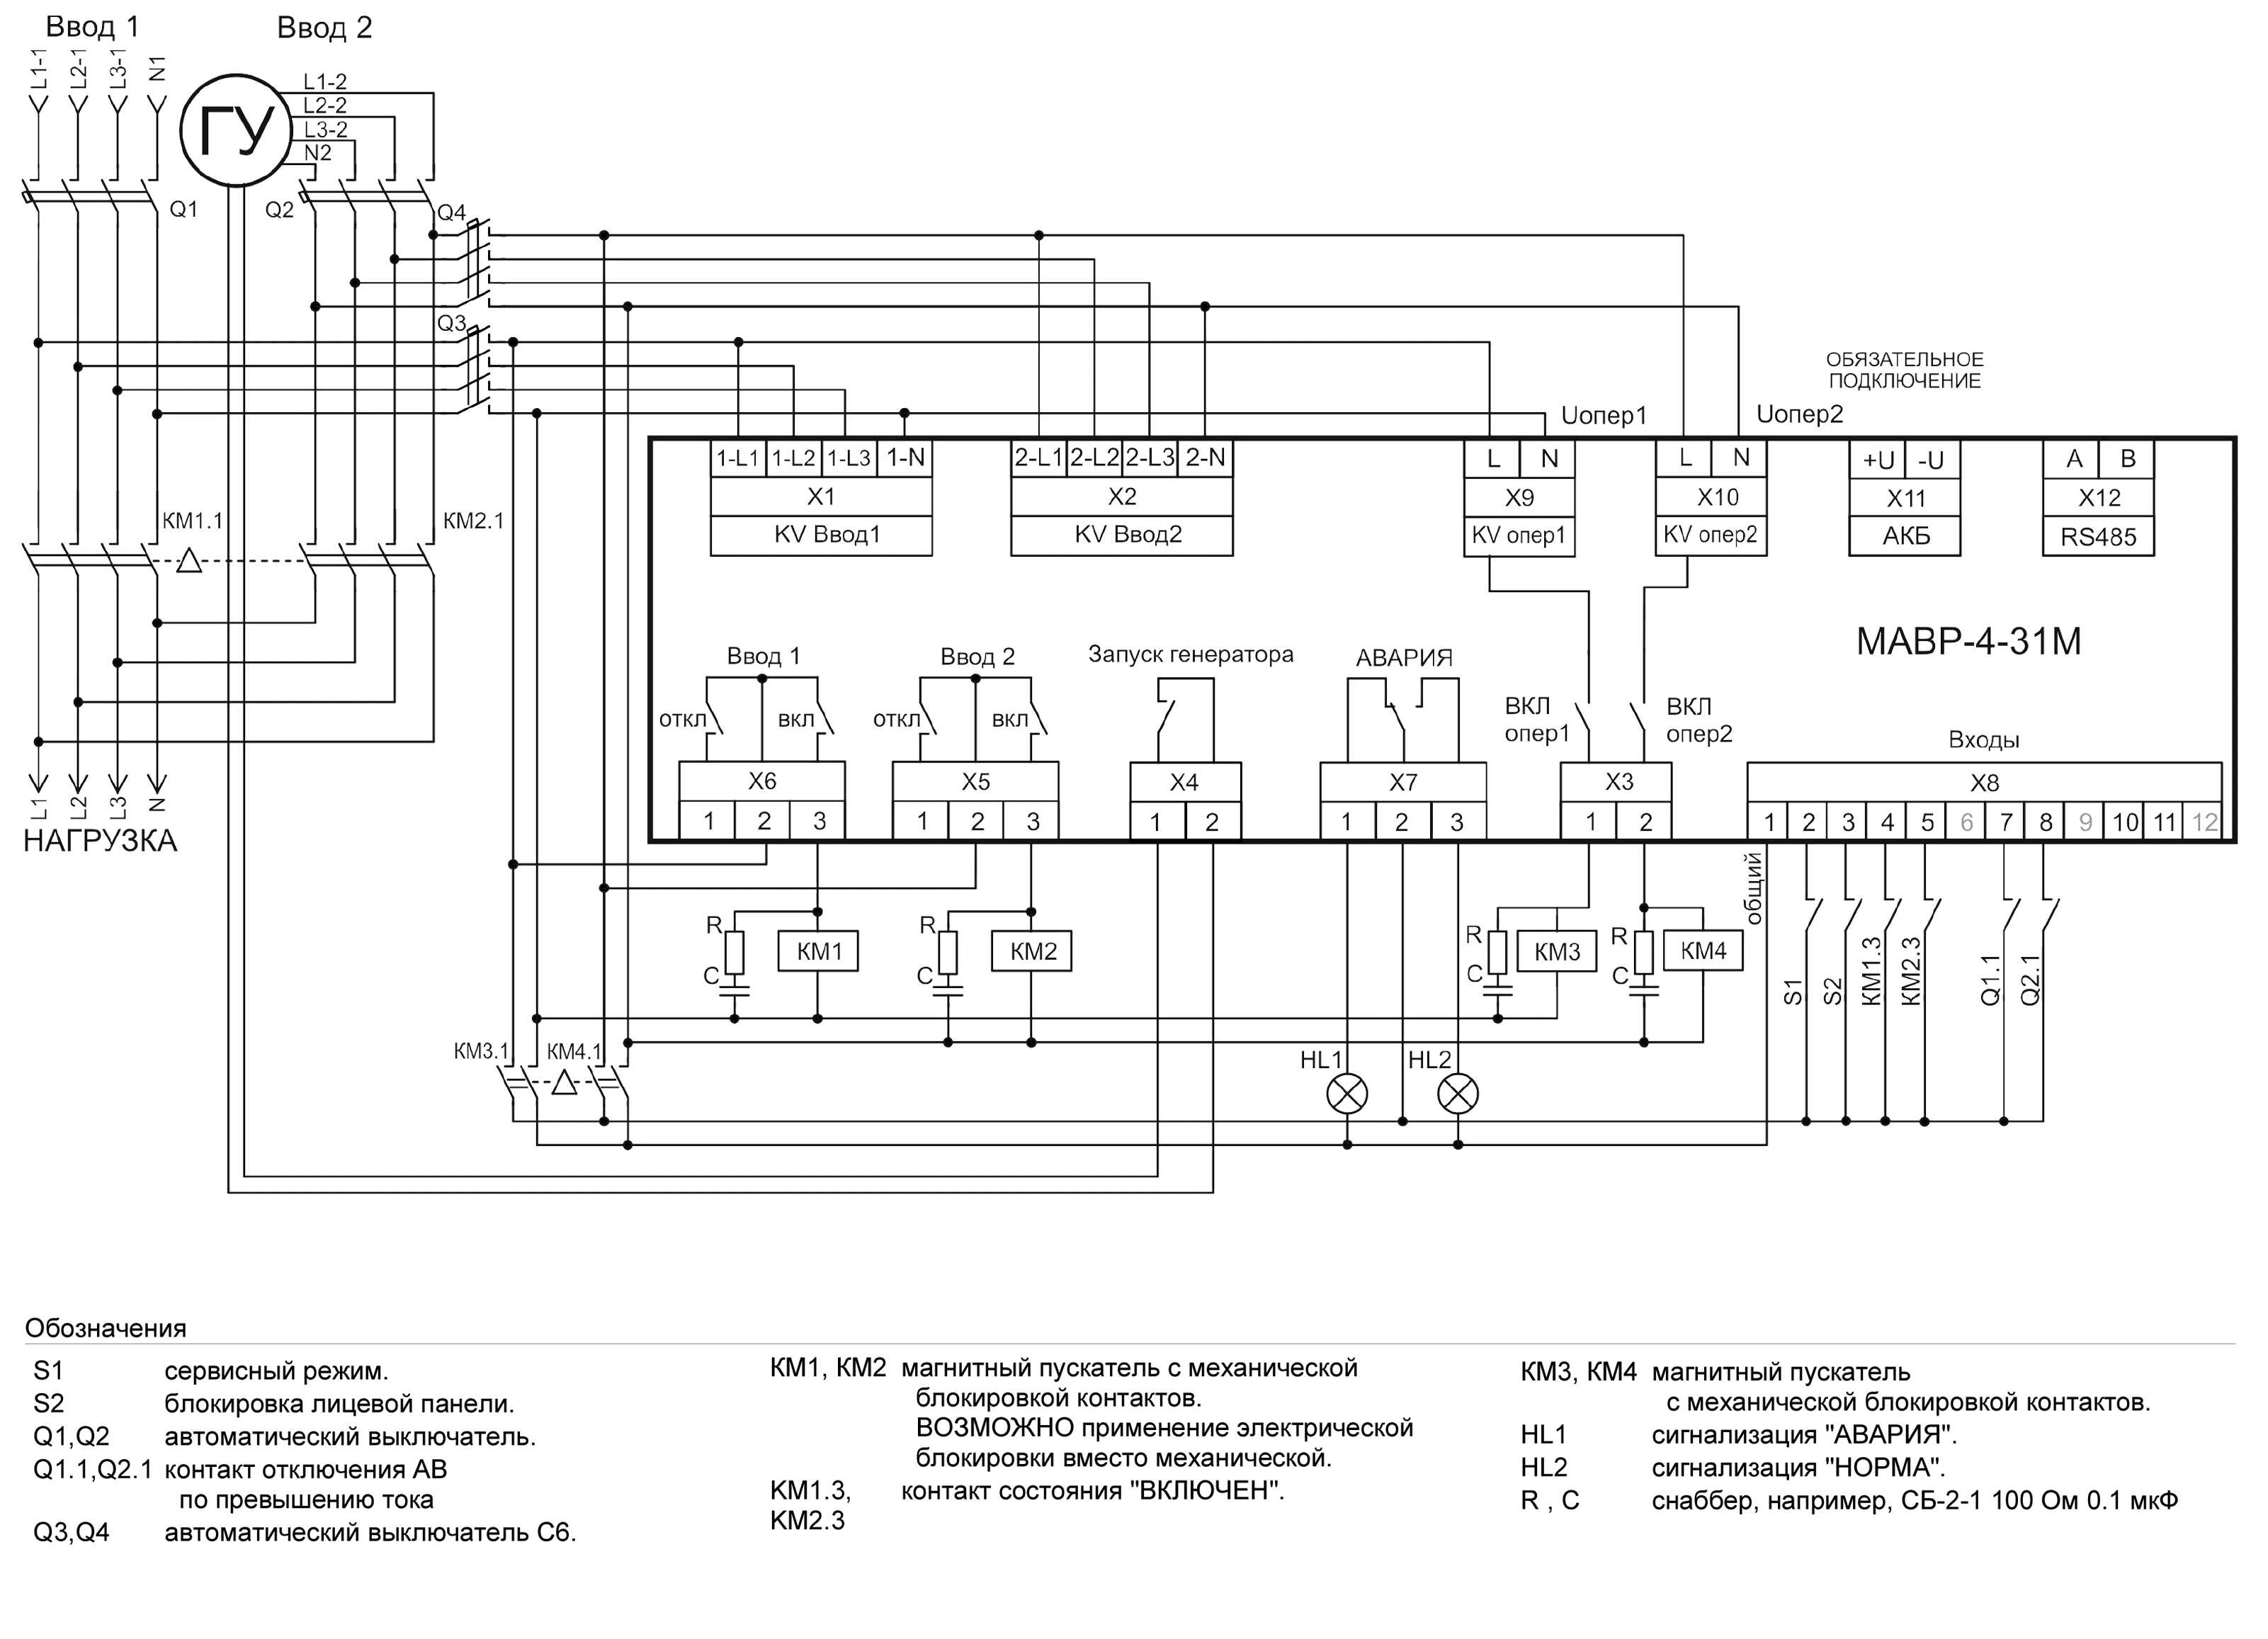 Схема АВР на магнитных пускателях 3-х фазный ввод и 3-фазный генератор МАВР-4-31М